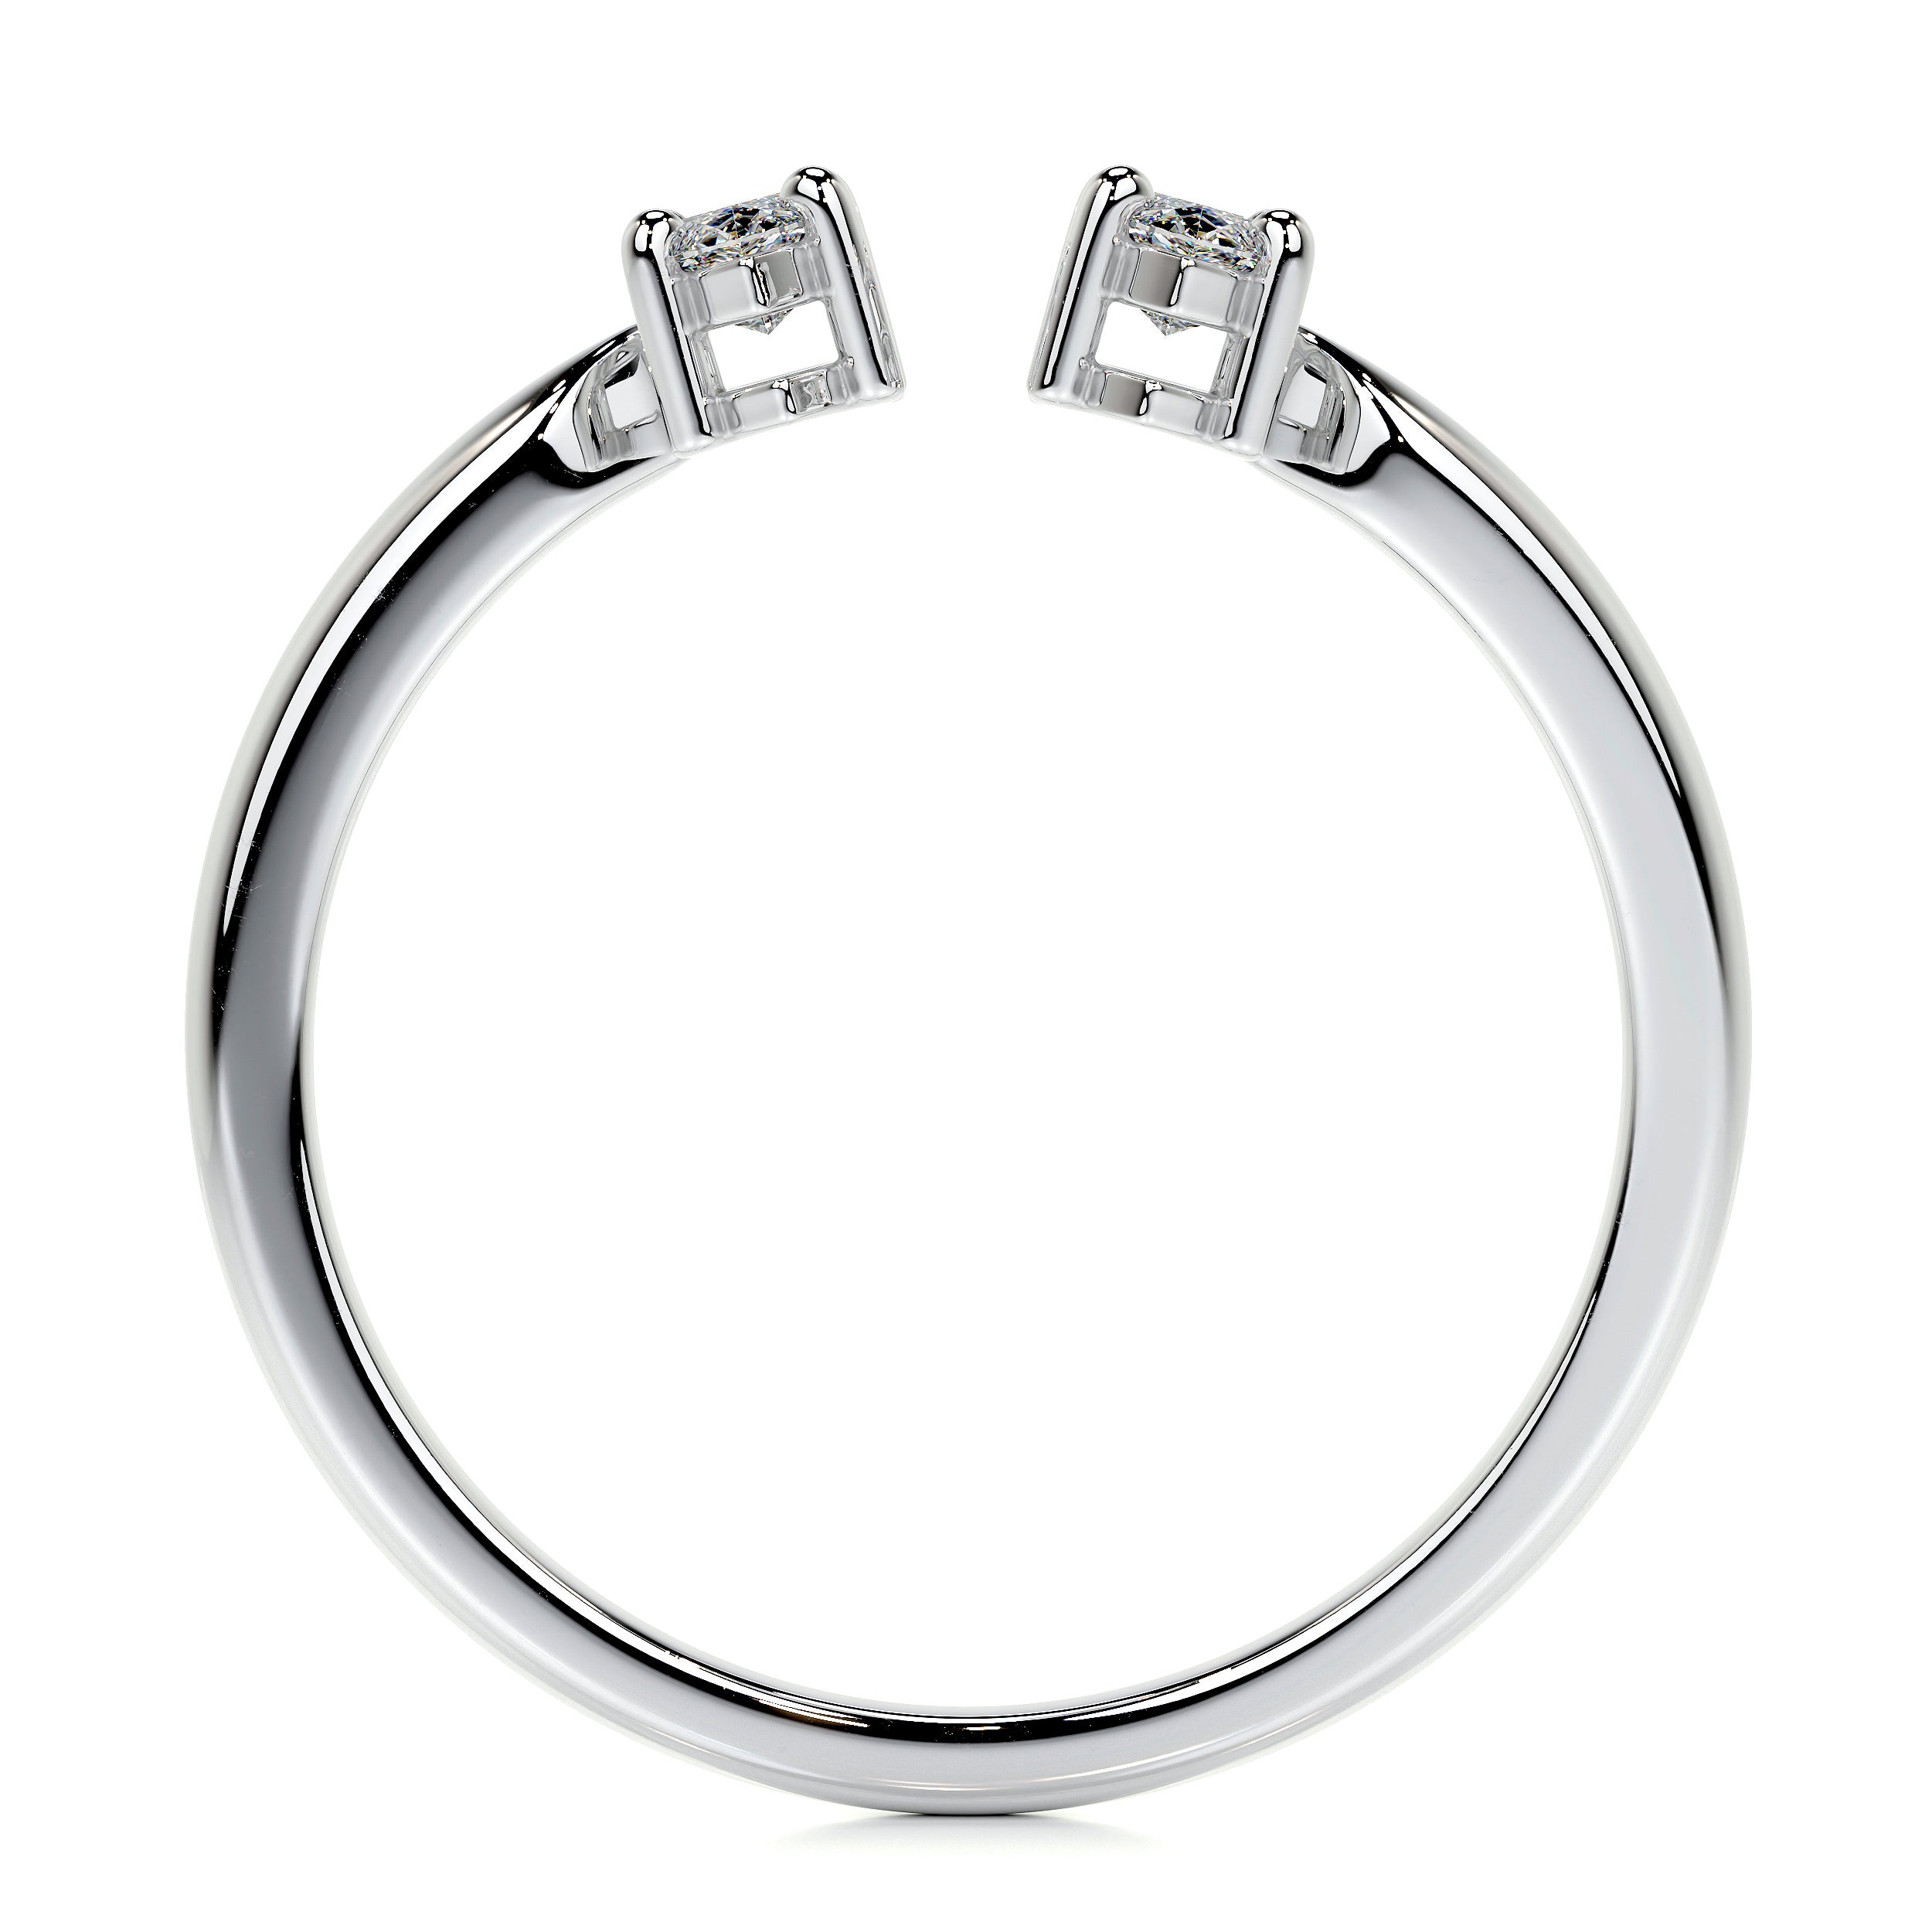 Celine Lab Grown Fashion Ring   (0.36 Carat) -18K White Gold